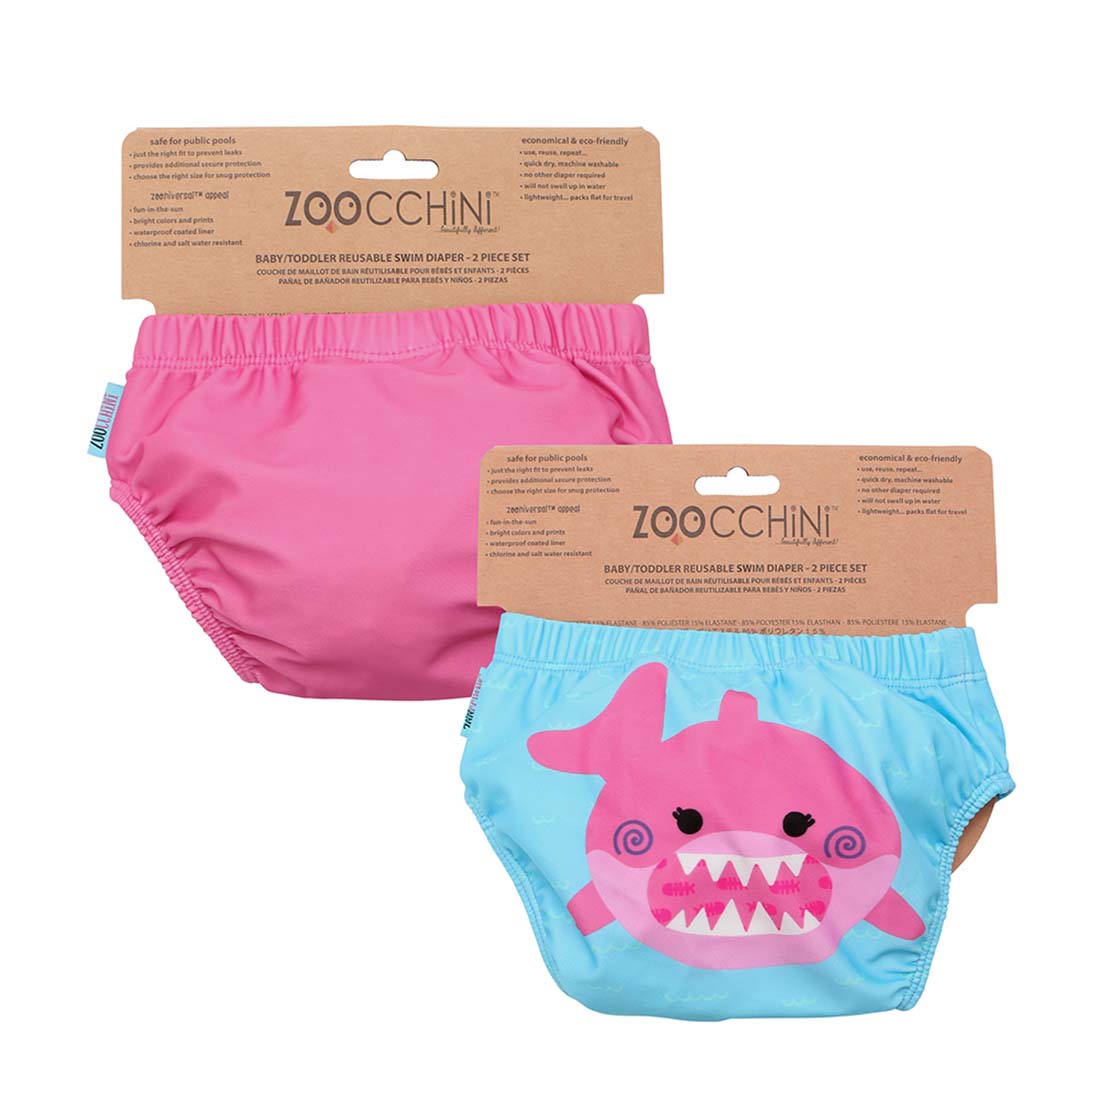 Baby/Toddler Reuseable Swim Diaper Set (2 Pcs) - Sophie the Shark